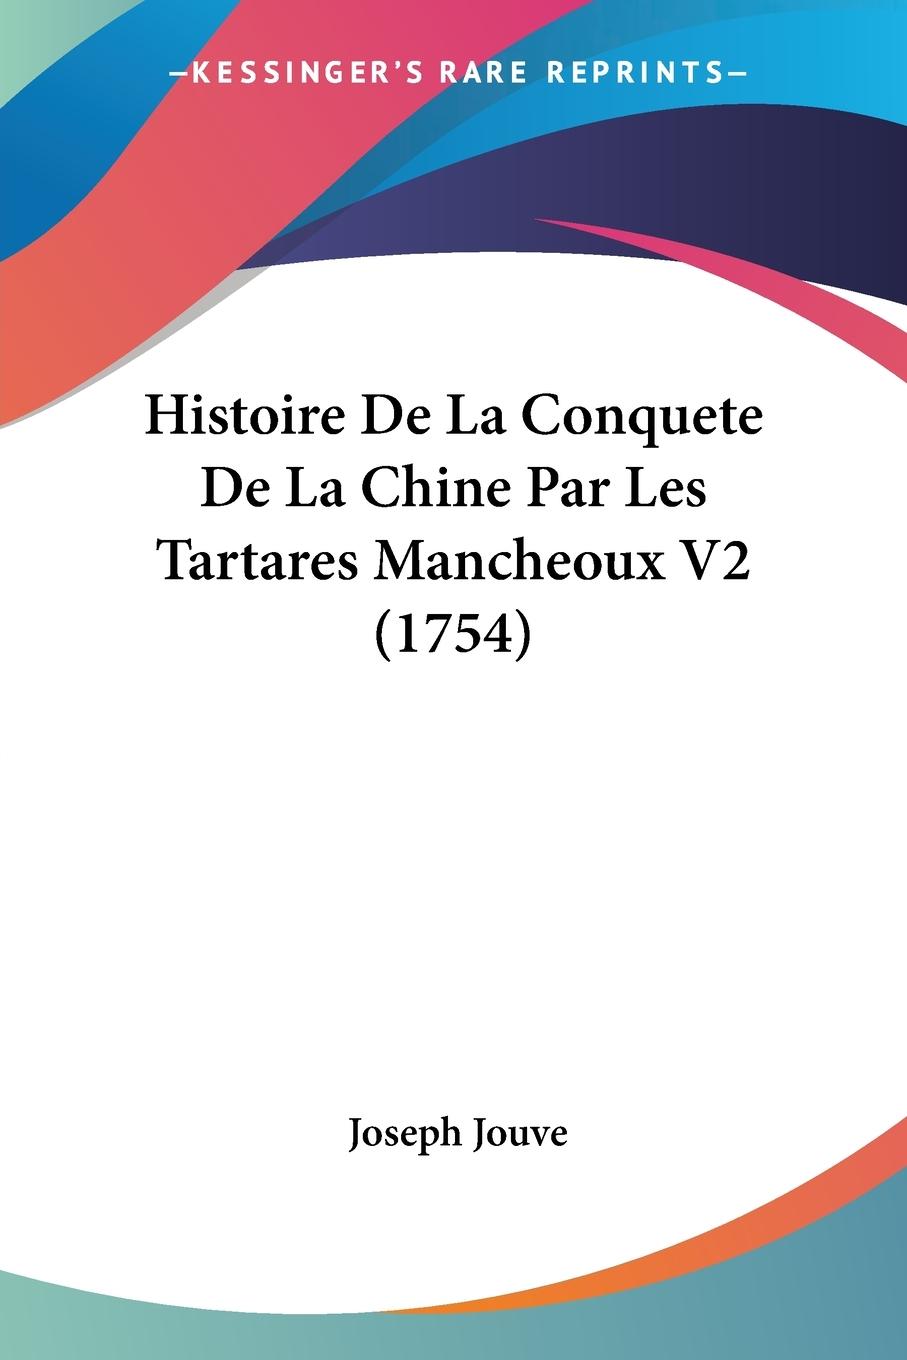 Histoire De La Conquete De La Chine Par Les Tartares Mancheoux V2 (1754) - Jouve, Joseph